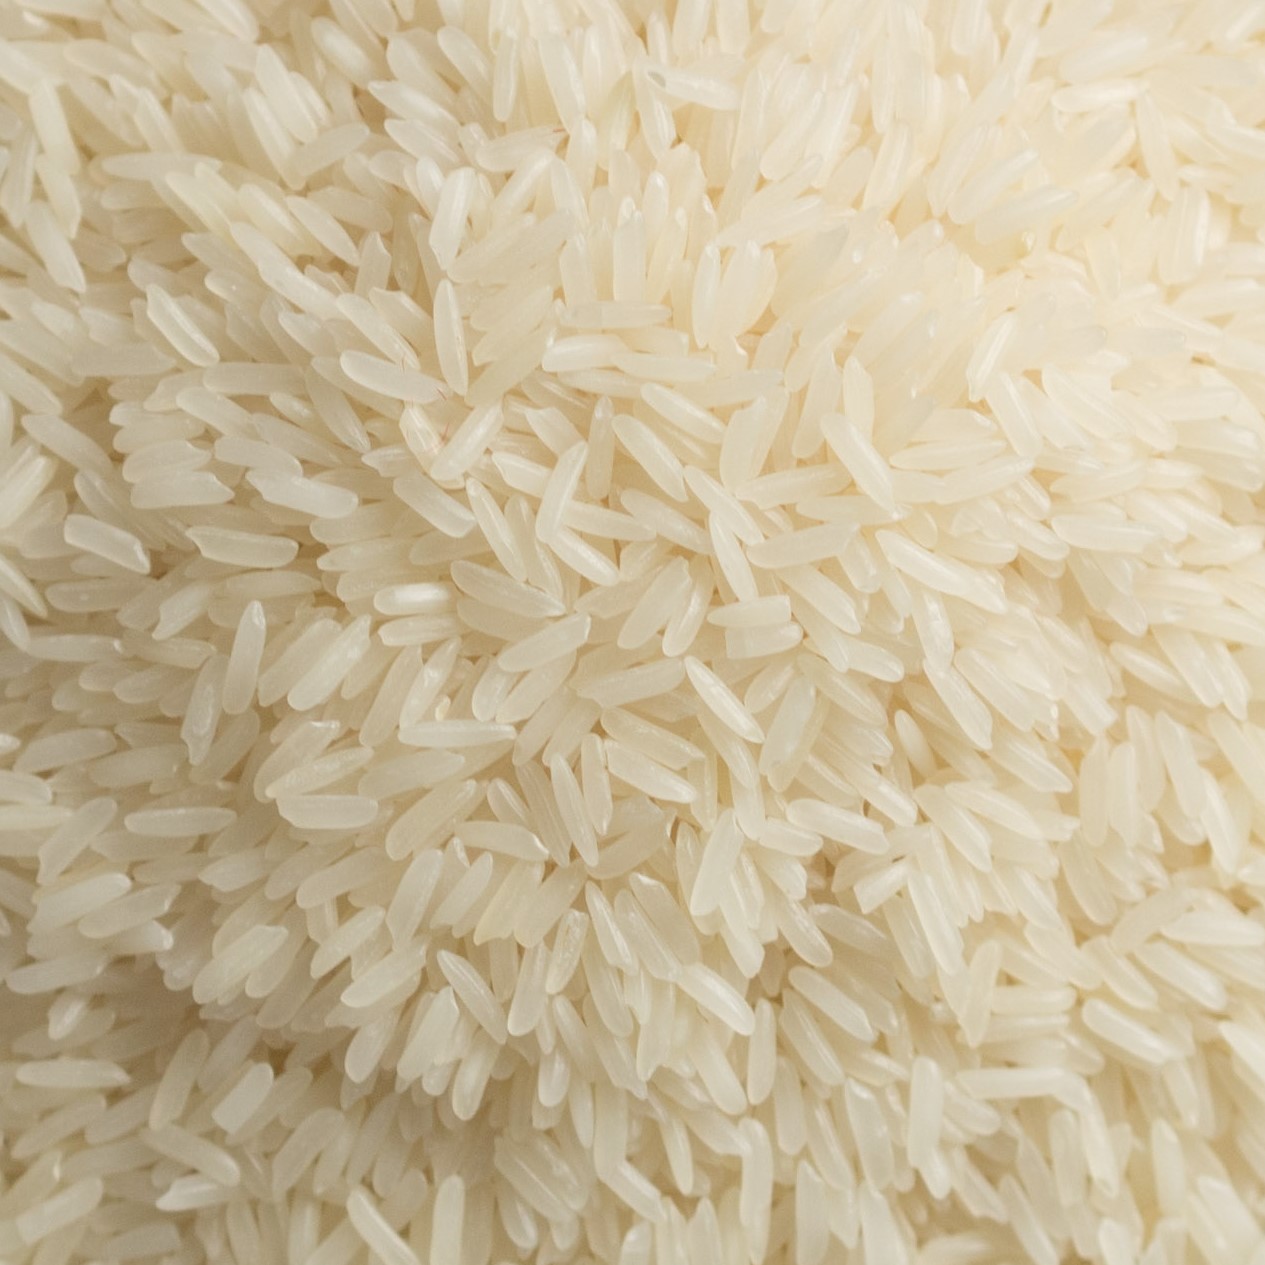 Басмати что это такое. Рис басмати вареный. Патна рис. Длиннозерный рассыпчатый рис. Виды риса басмати.